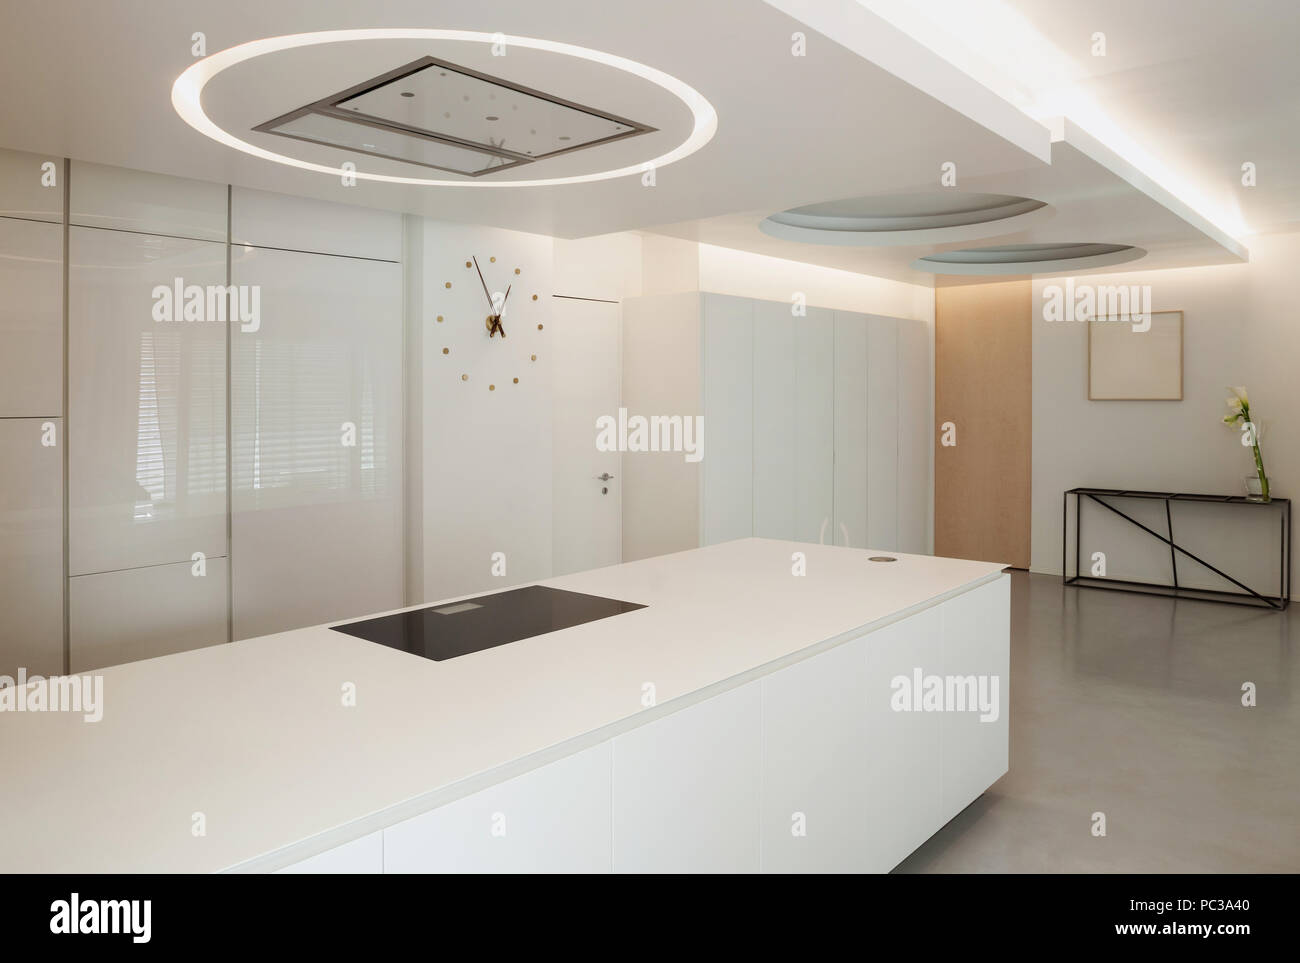 Luxury apartment, white kitchen in modern style Stock Photo